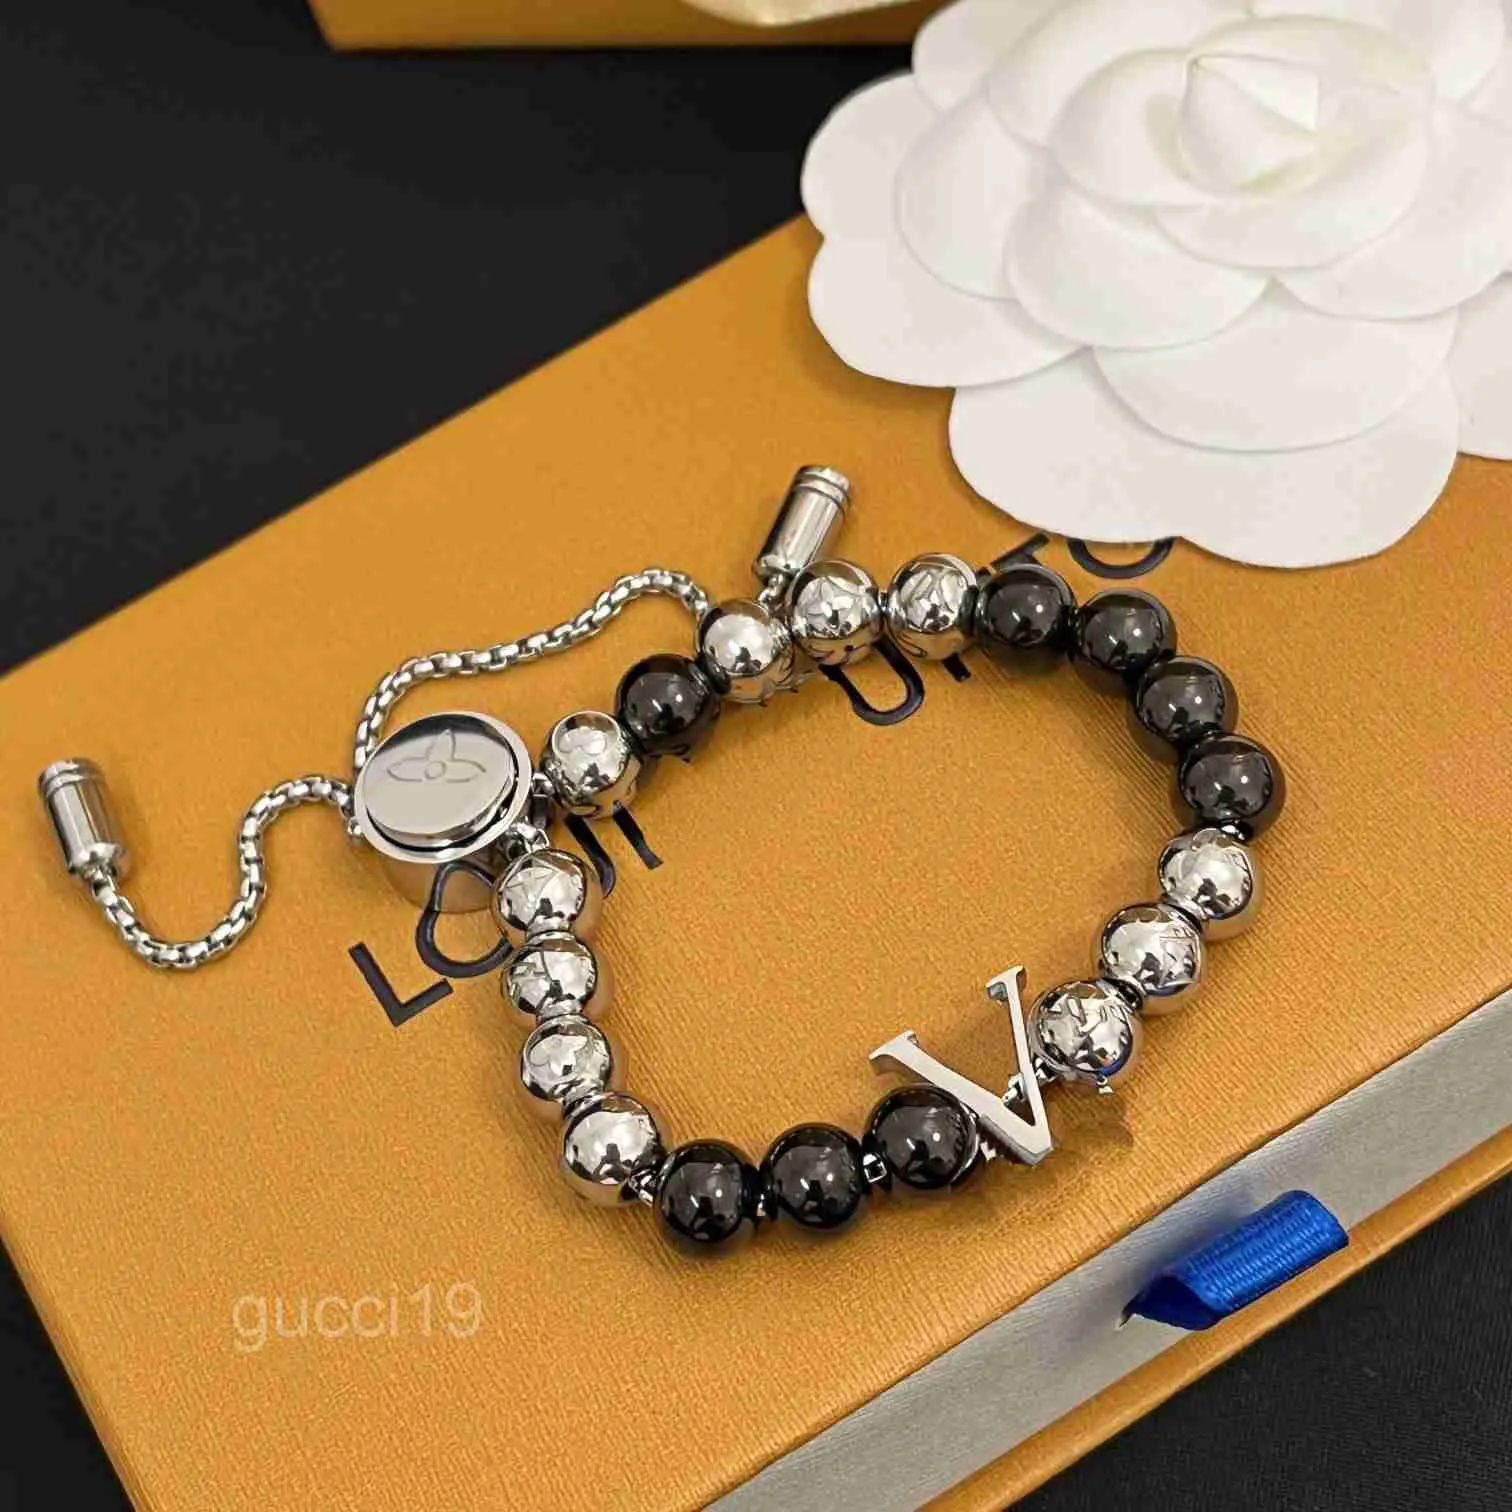 Boutique magnético grânulo pulseira de alta qualidade amor presente das mulheres romântico moda jóias acessórios festa casamento corrente k77v k77v